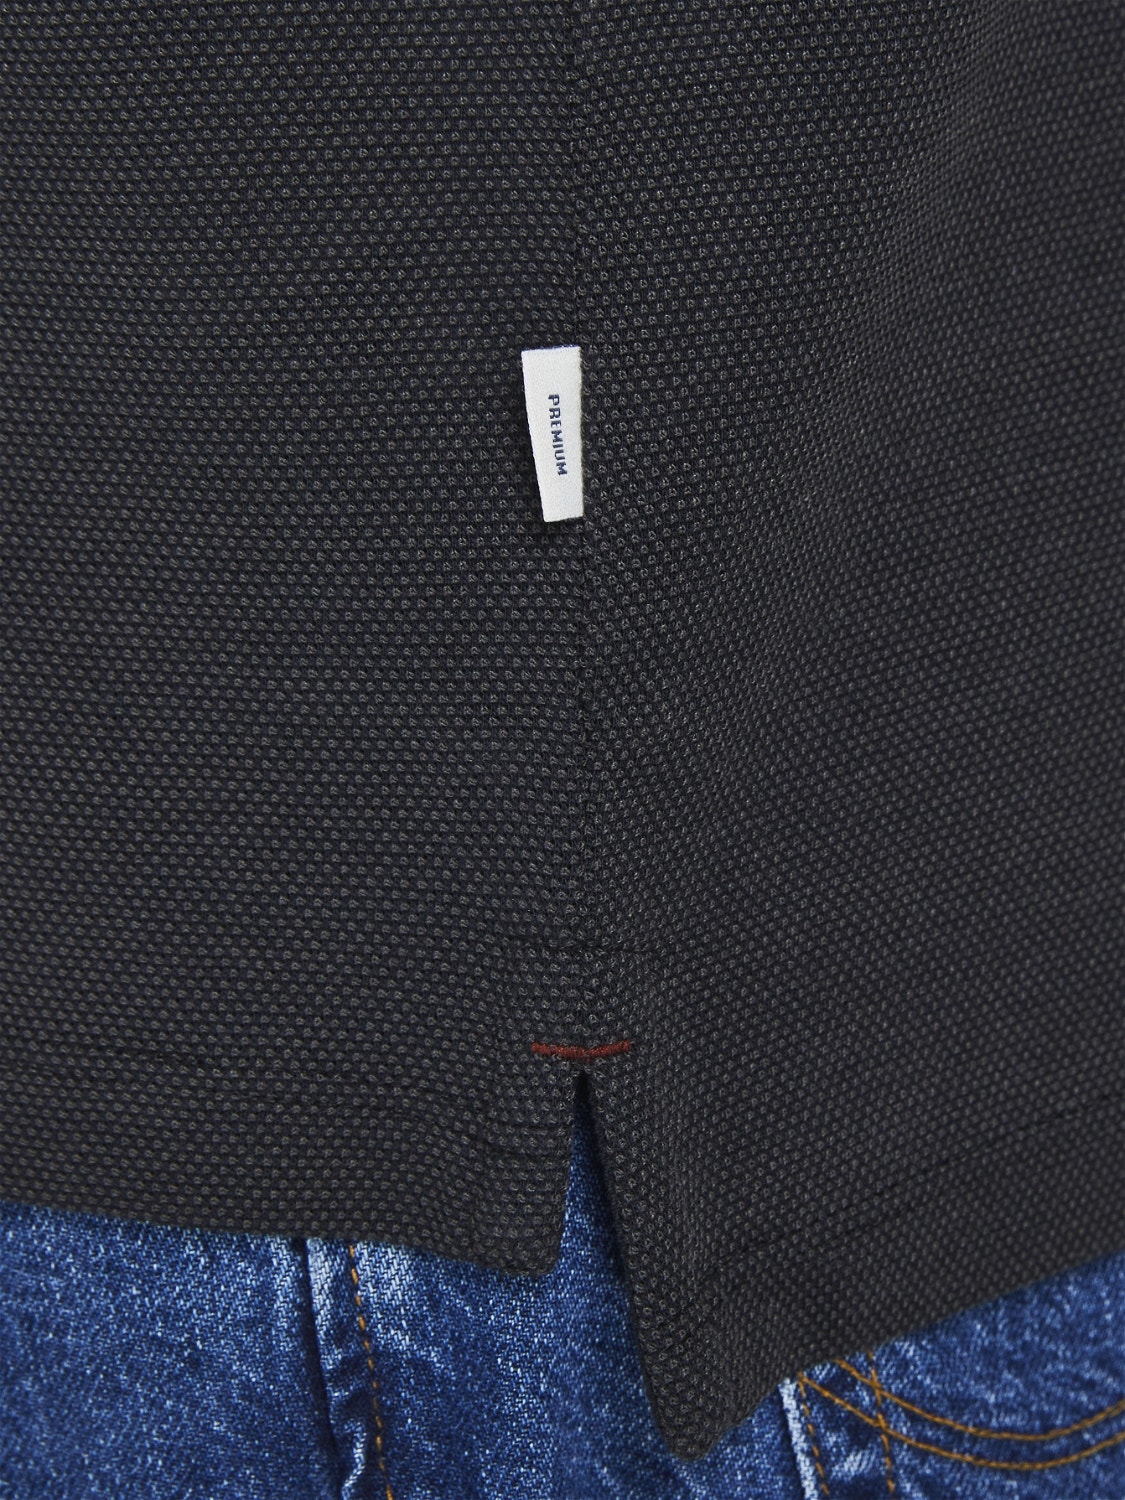 Jack & Jones Vanlig Polo T-skjorte -Black - 12169064